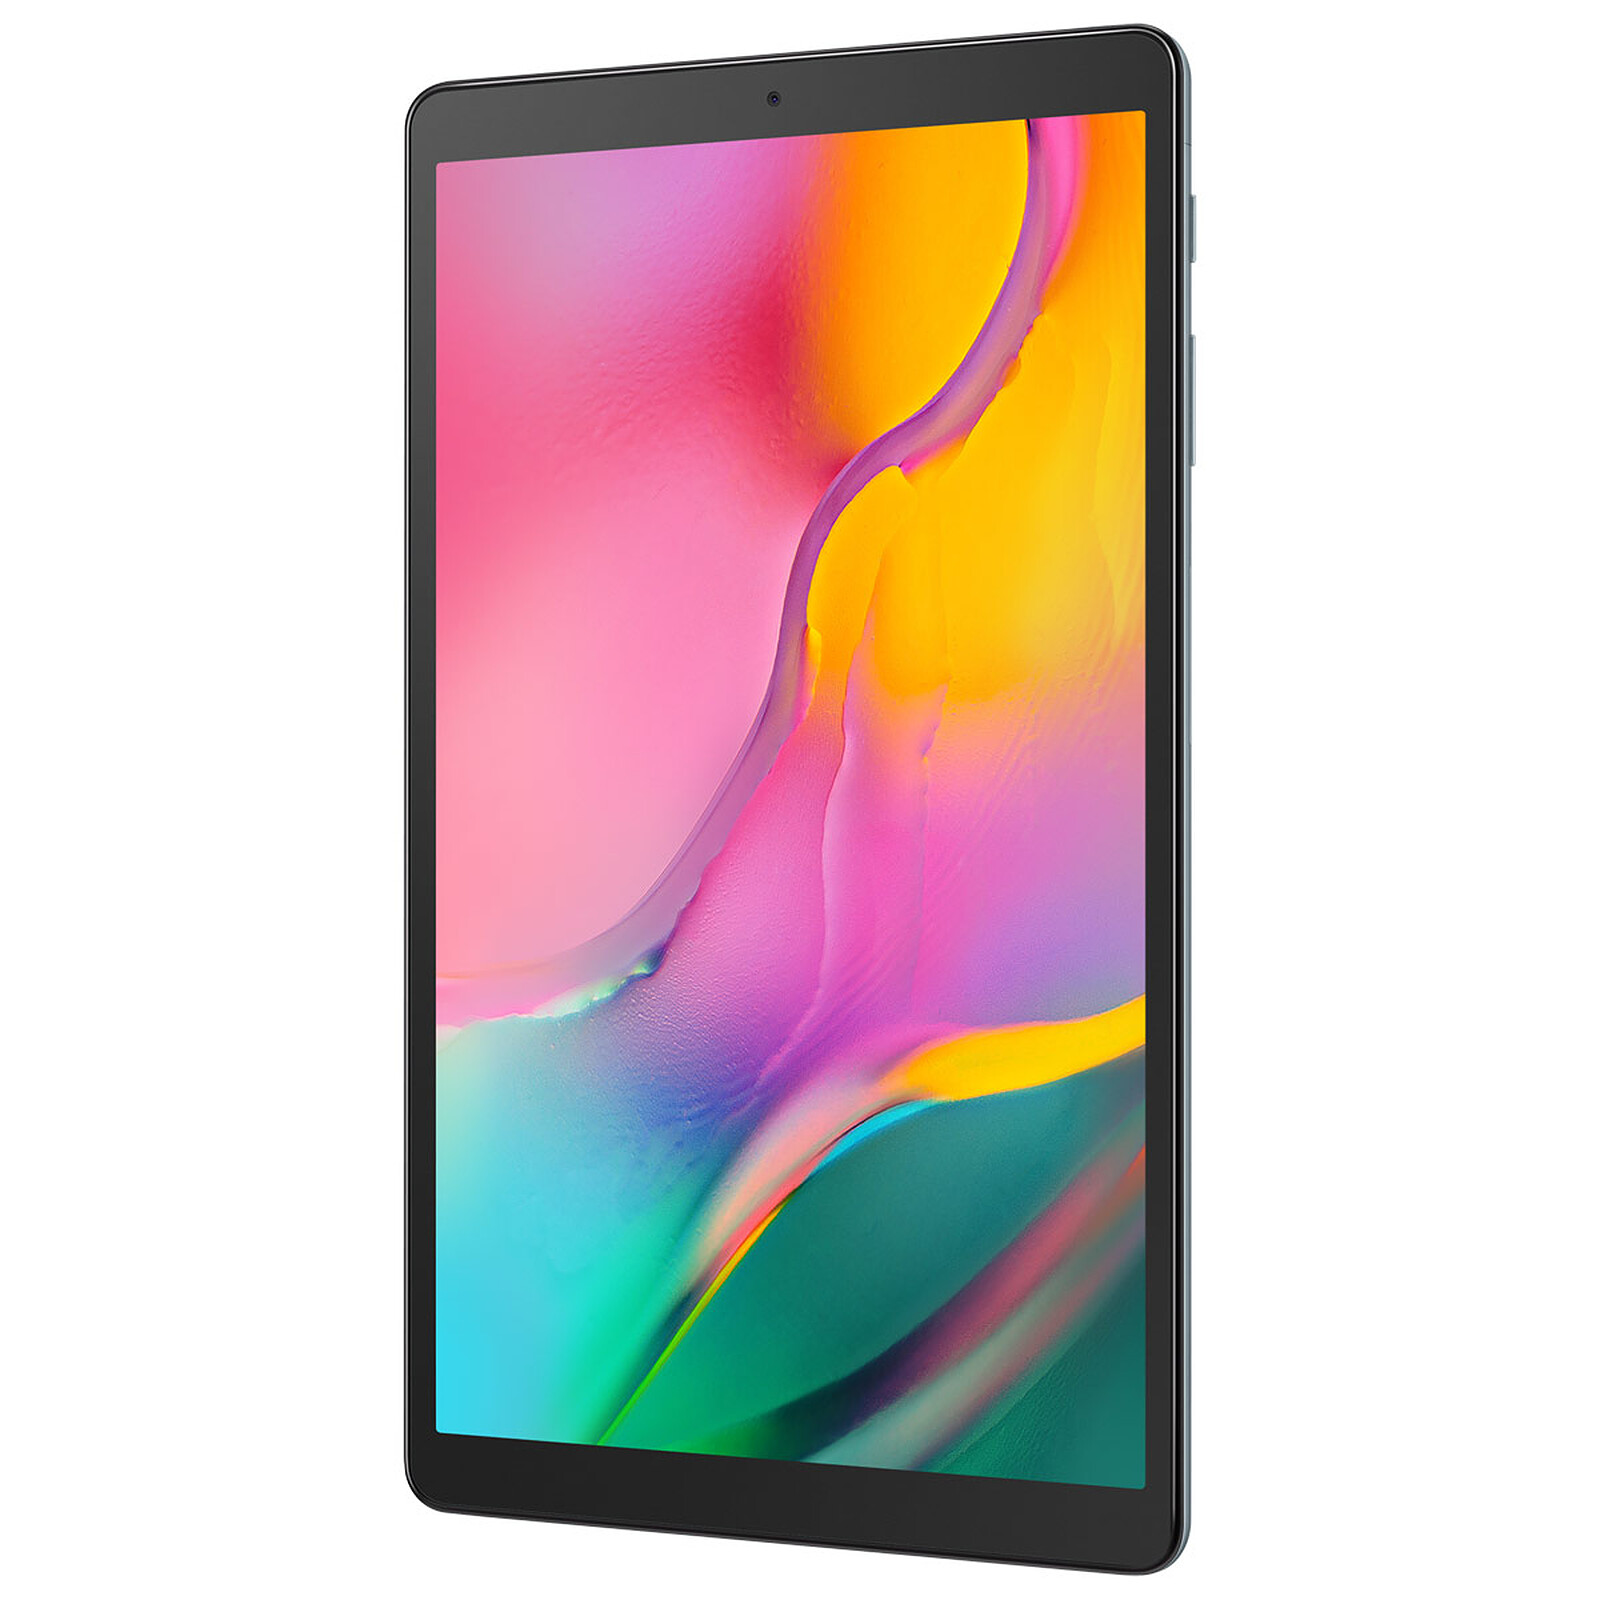 Étui pour tablette avec stylet pour Samsung Galaxy Tab A 10.1 ”(2019) SM- T510, SM-T515